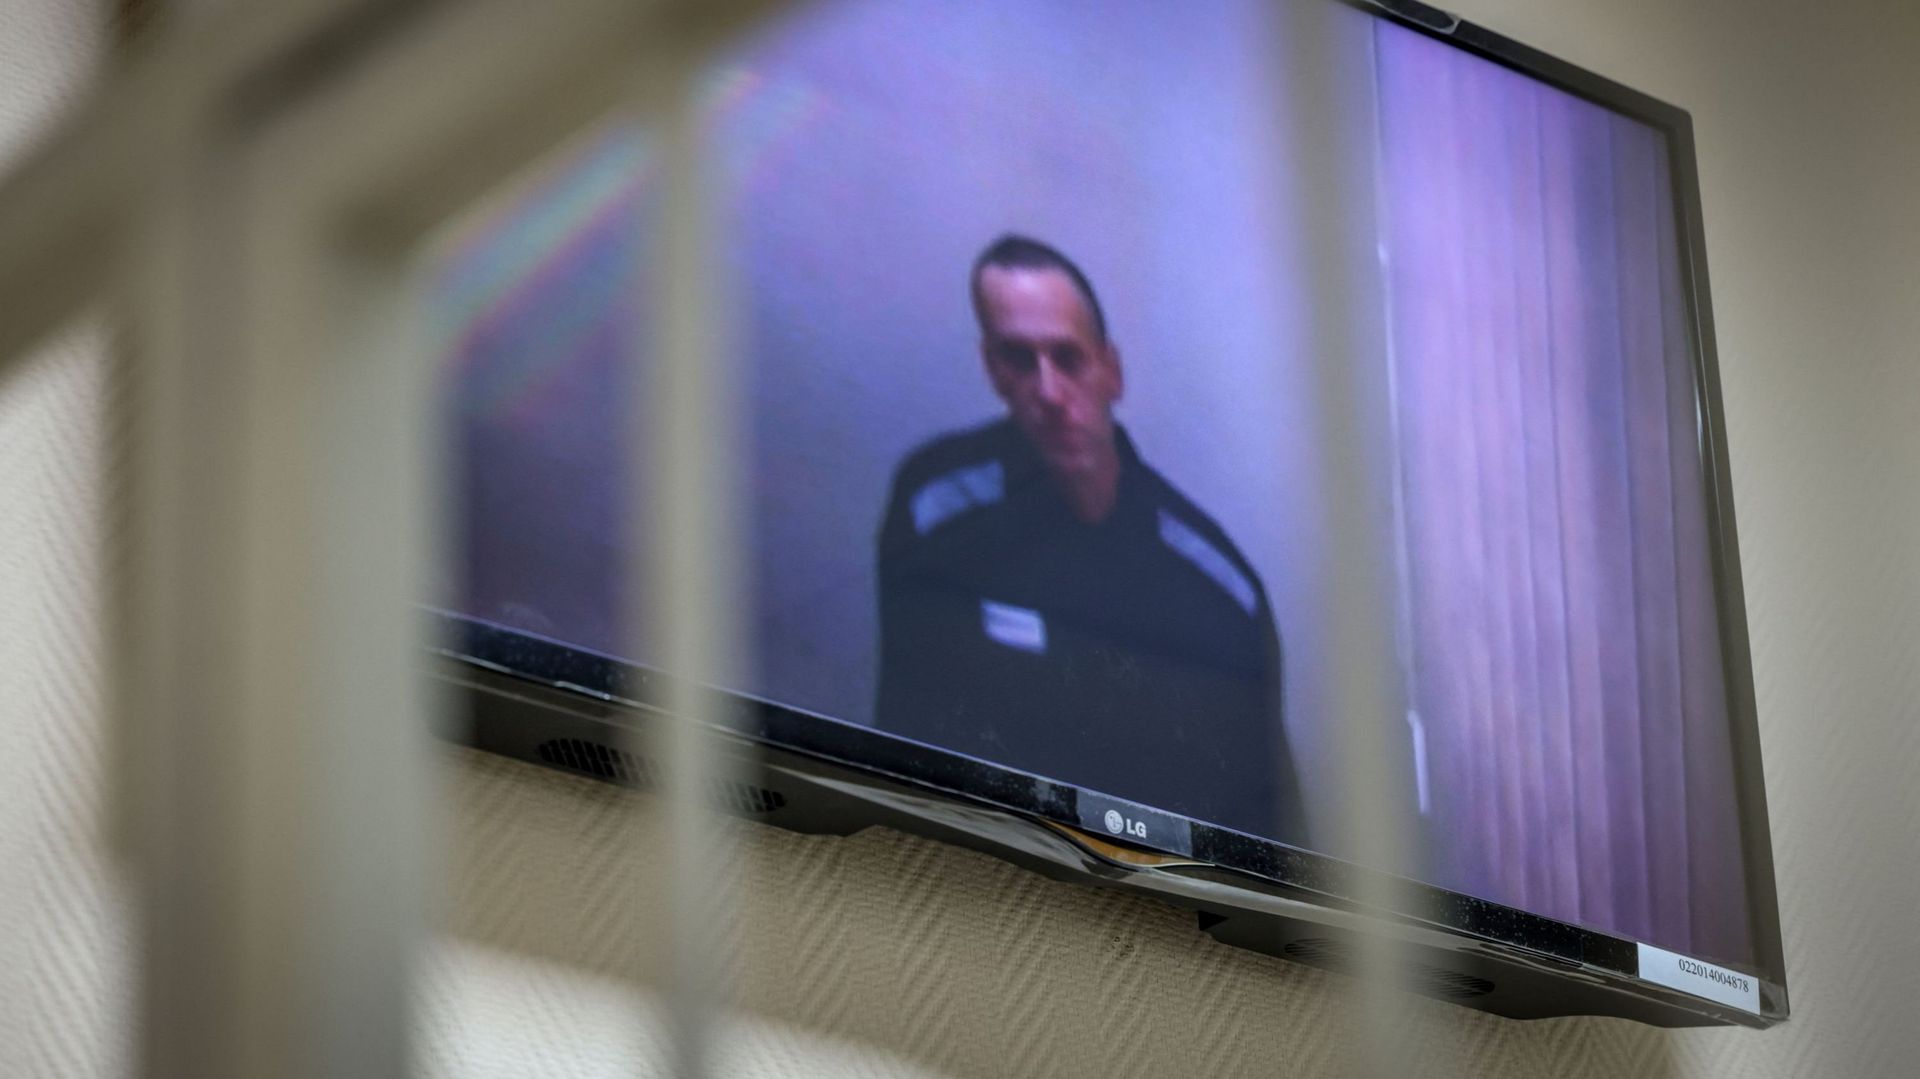 Depuis le 20 février dernier, Alexeï Navalny est incarcéré dans une colonie pénitentiaire située à Pokrov. Il a été condamné à une peine de deux ans et demi de prison.